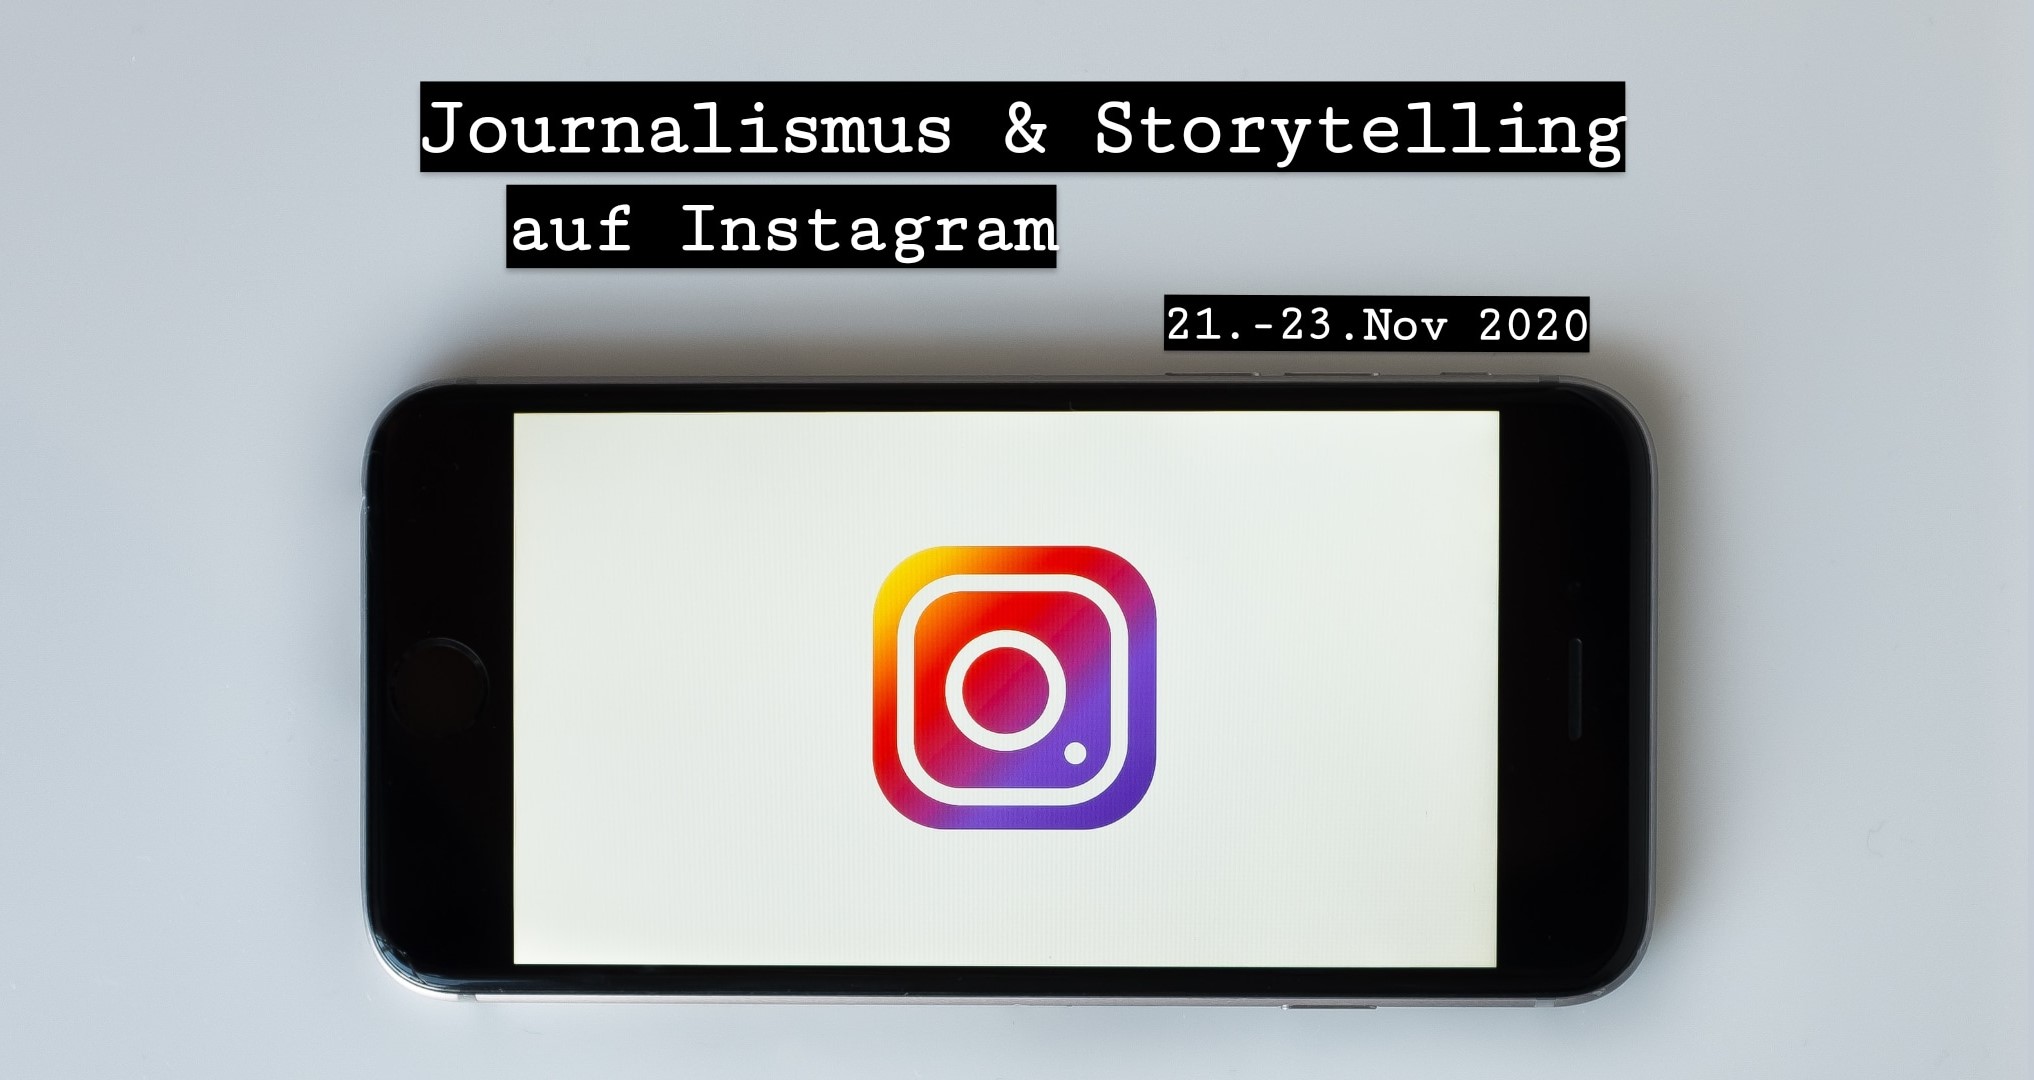 NJB-Seminar „Journalismus & Storytelling auf Instagram“ vom 21. bis 23. November 2020 auf Kloster Banz